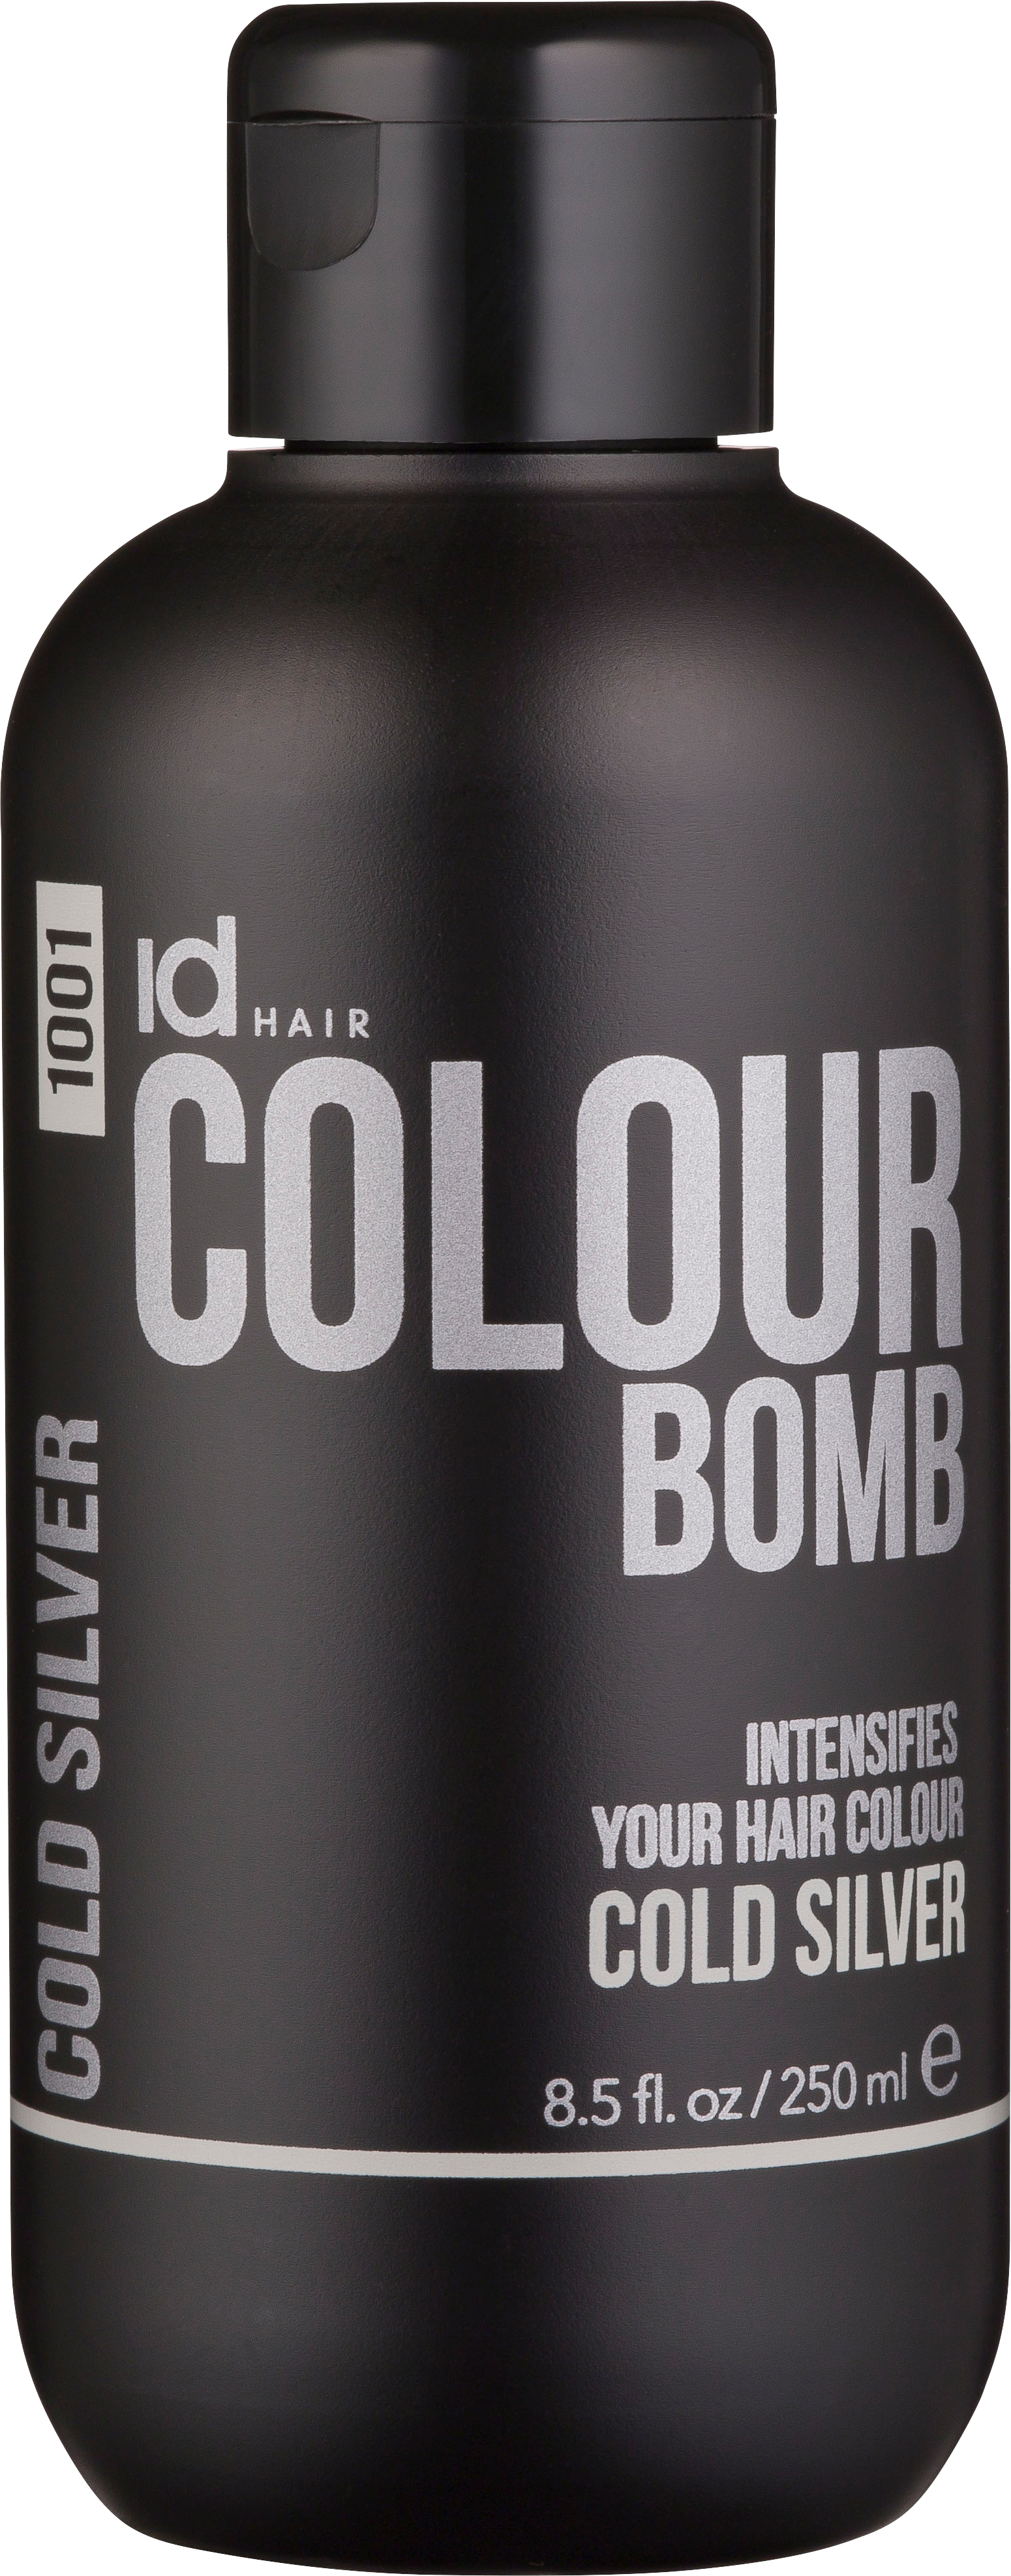 Colour Bomb Cold Silver (250ml)